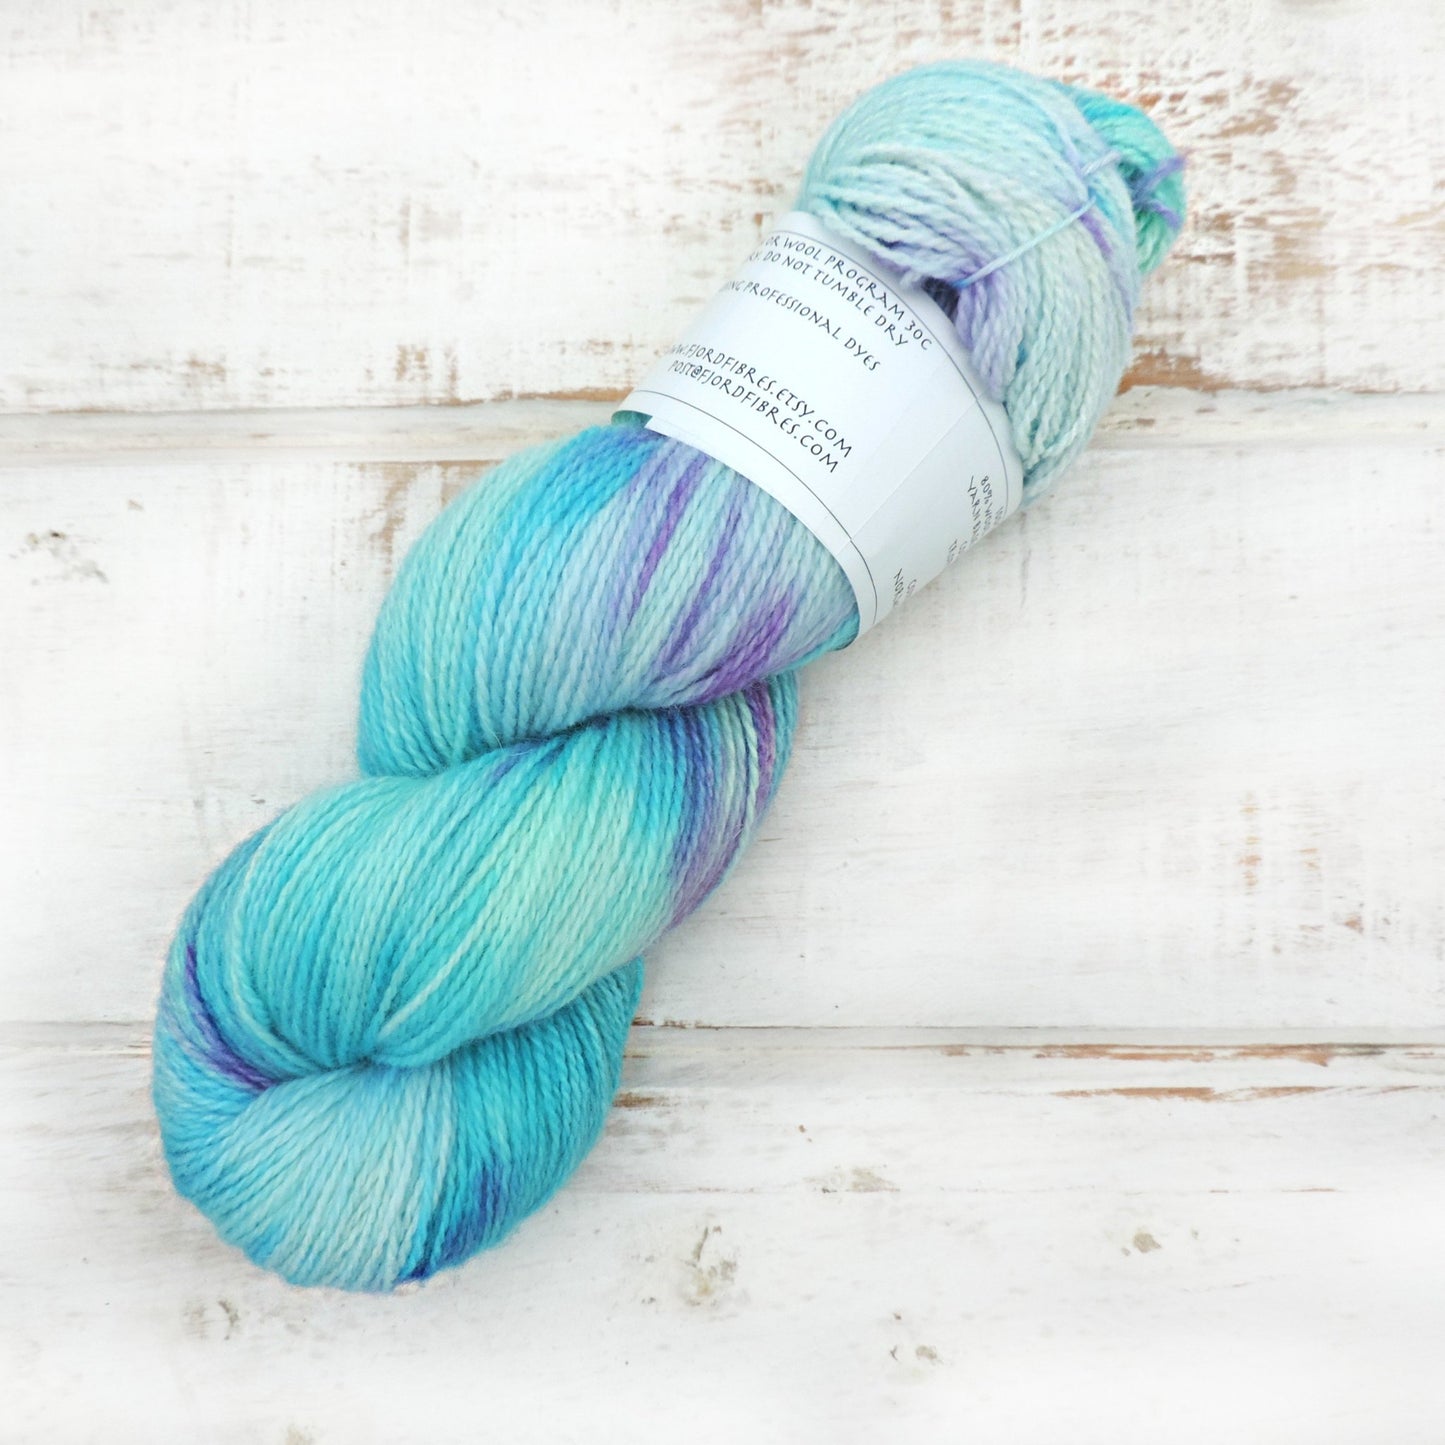 Tropical waters - Trollfjord Sock - Hand Dyed Yarn - Variegated Yarn